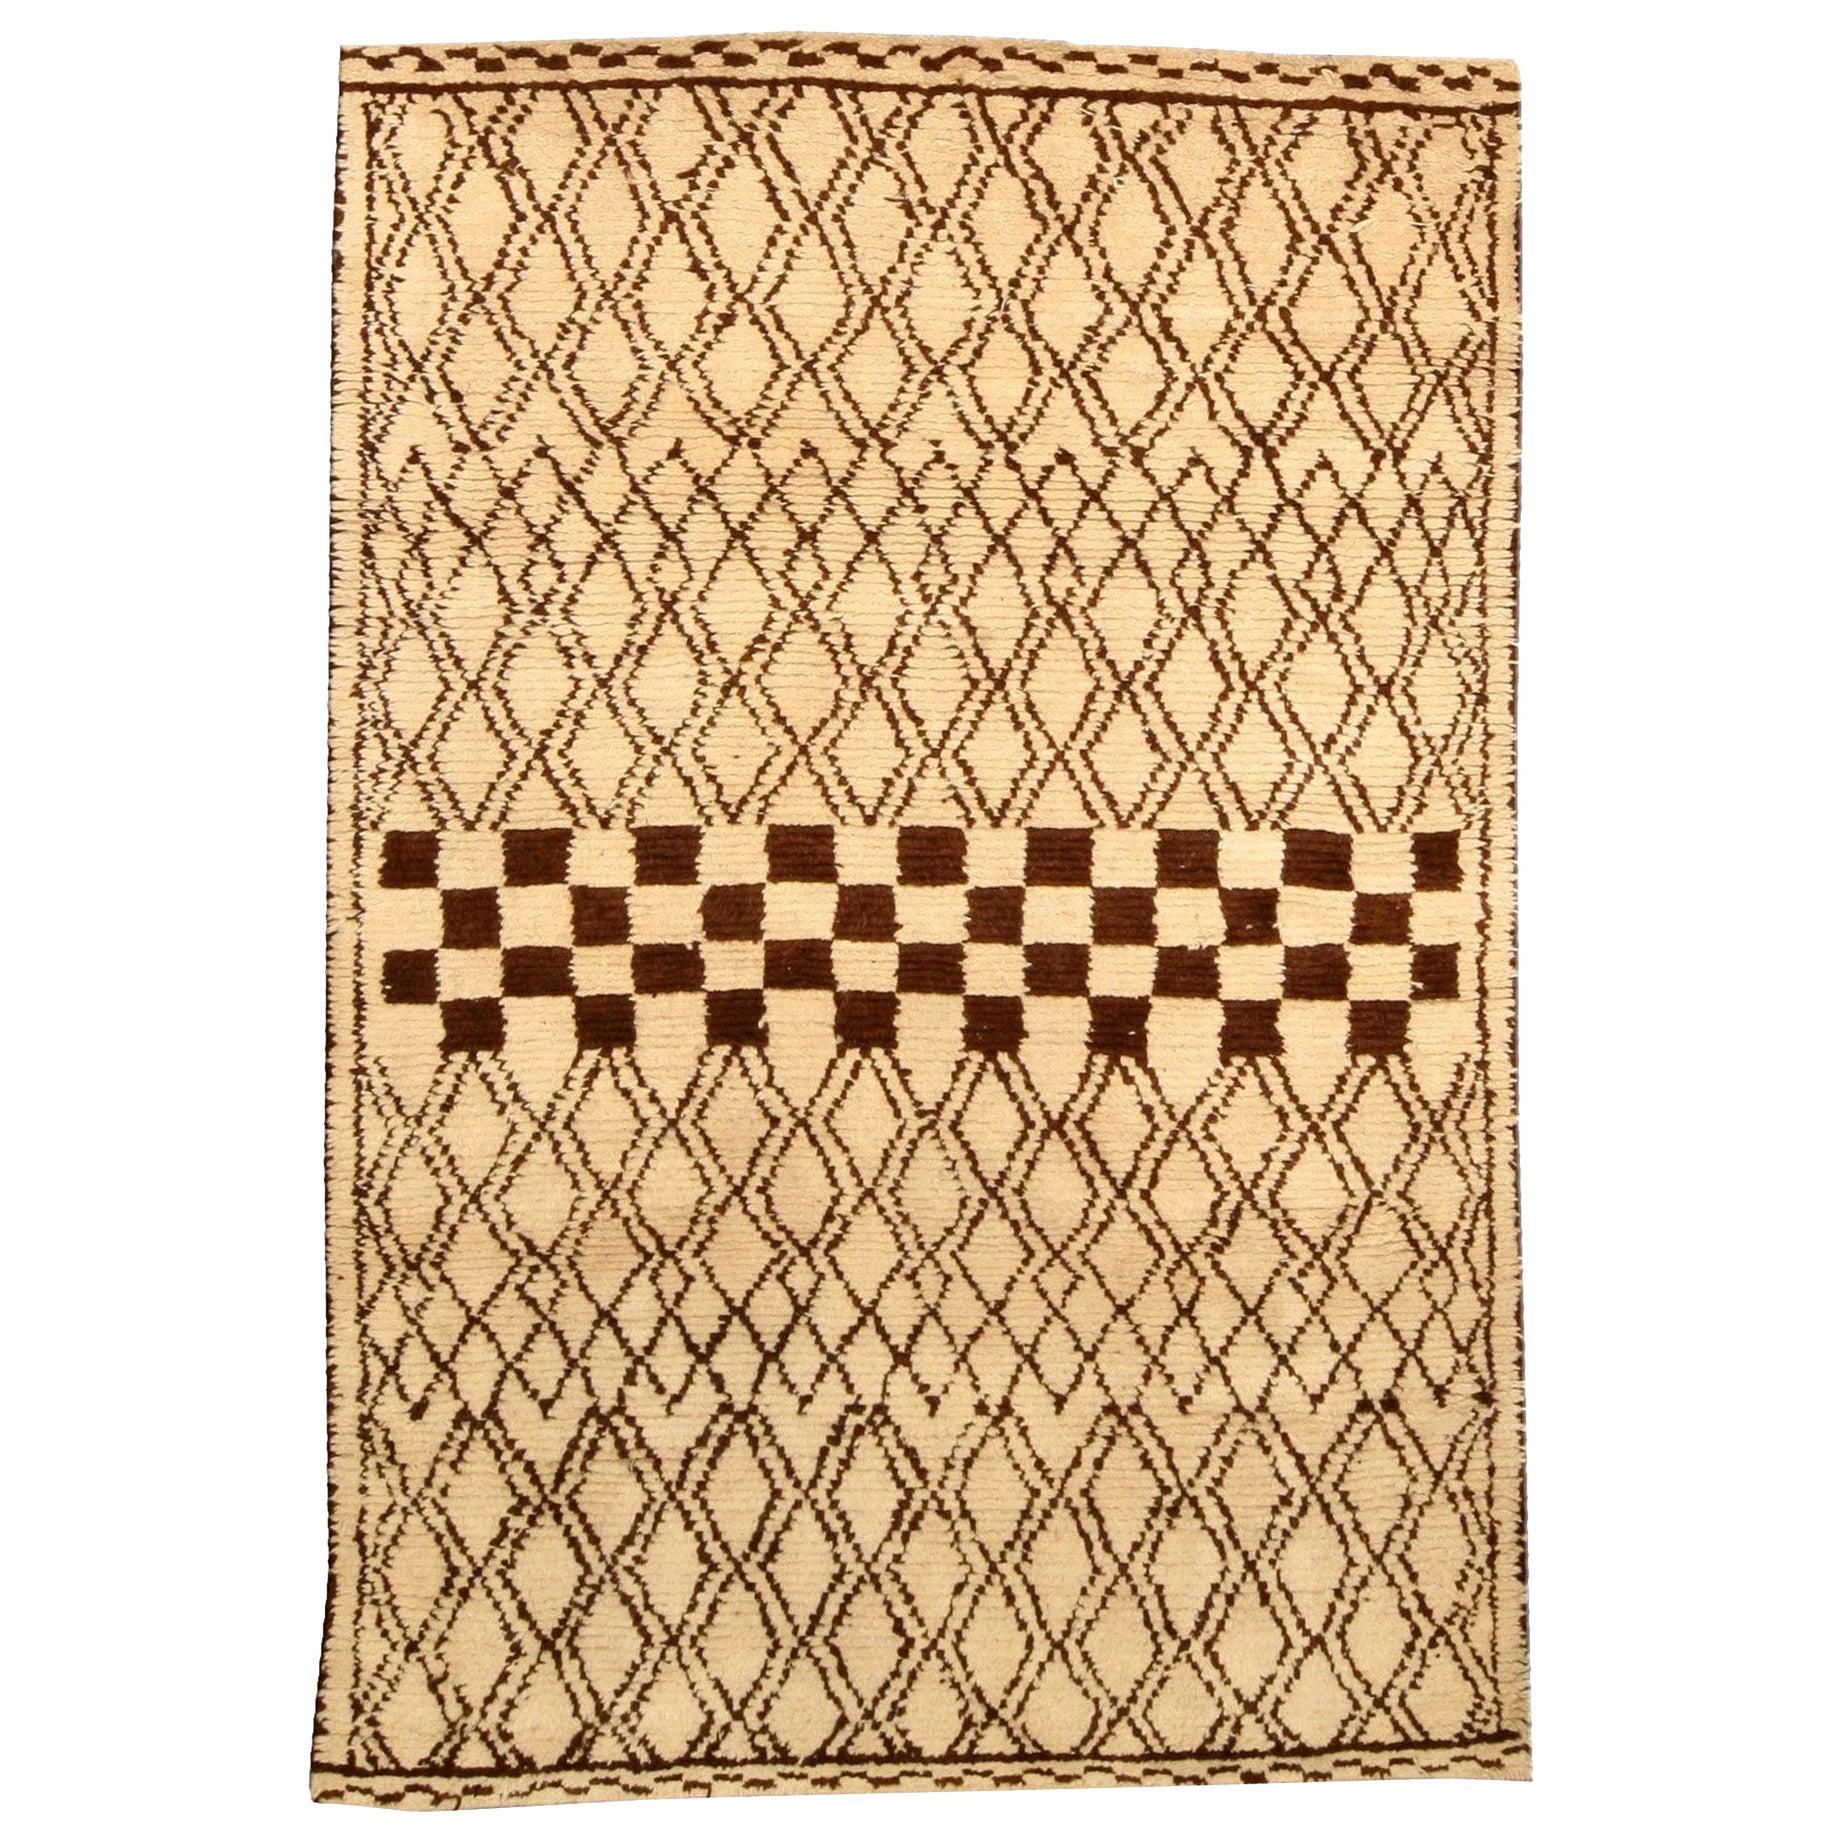 Modern 1790 Marokkanischer Teppich in Beige und Brown von Doris Leslie Blau